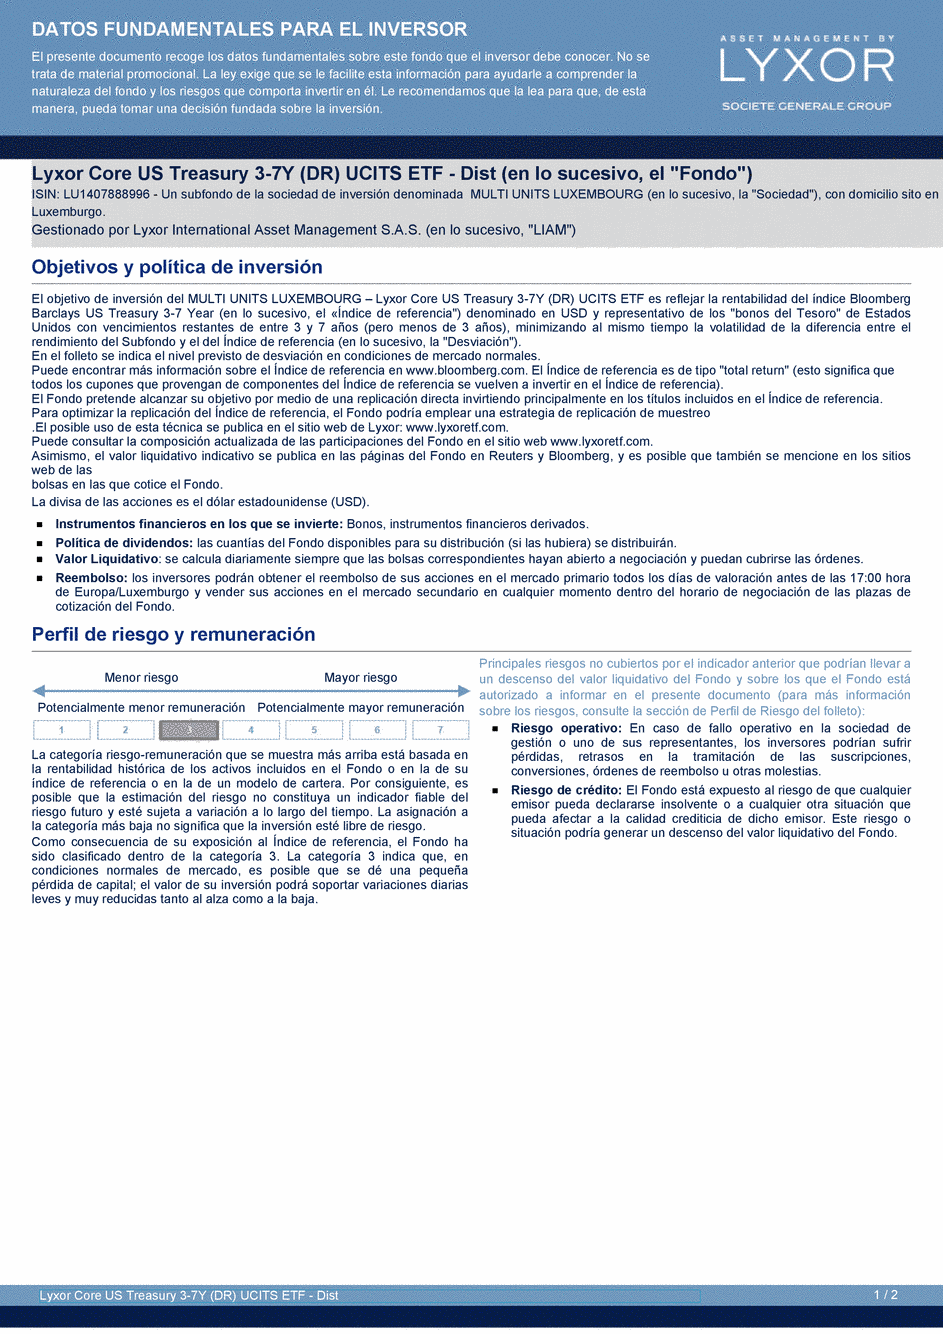 DICI Lyxor Core US Treasury 3-7Y (DR) UCITS ETF - Dist - 20/04/2020 - Espagnol